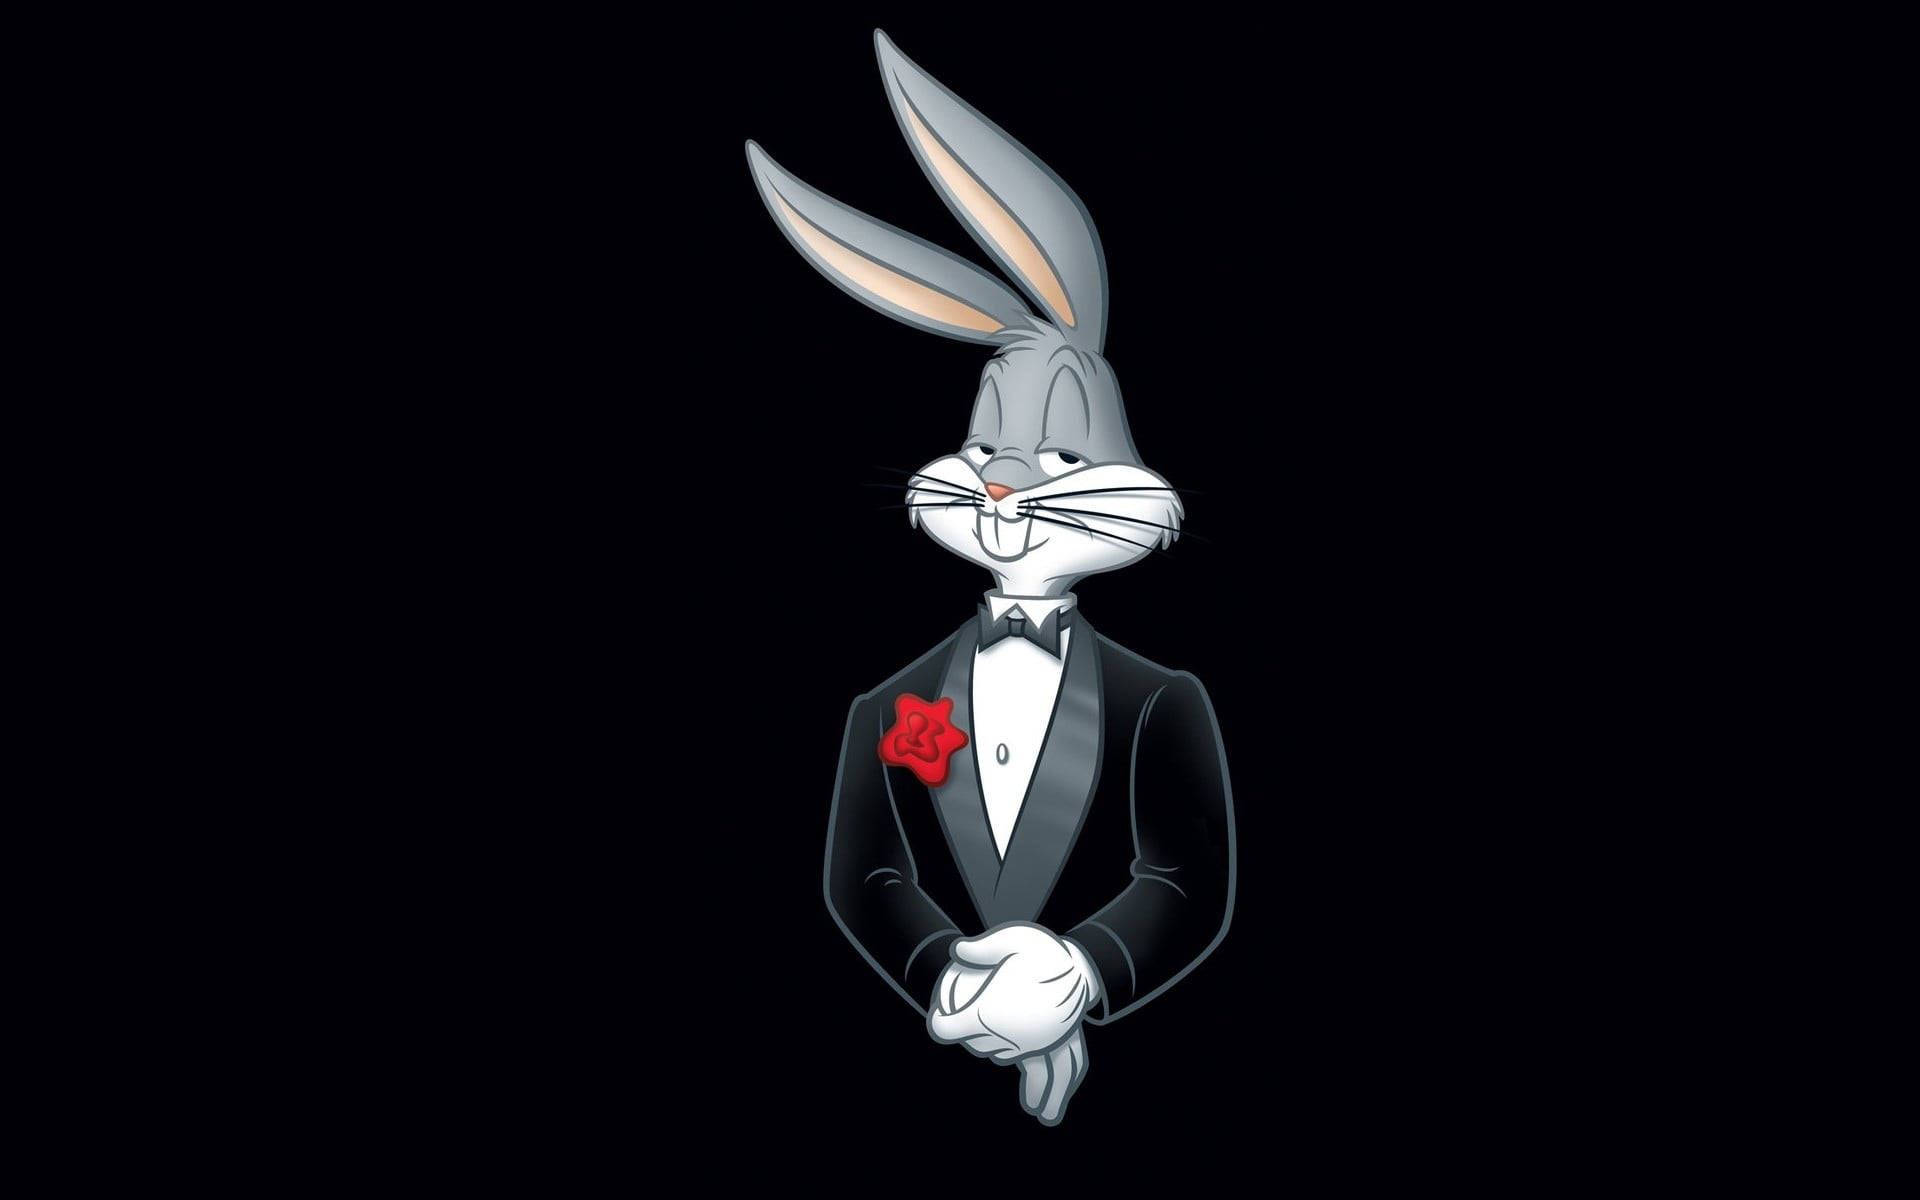 Looney Tunes Bugs Bunny In Suit Wallpaper